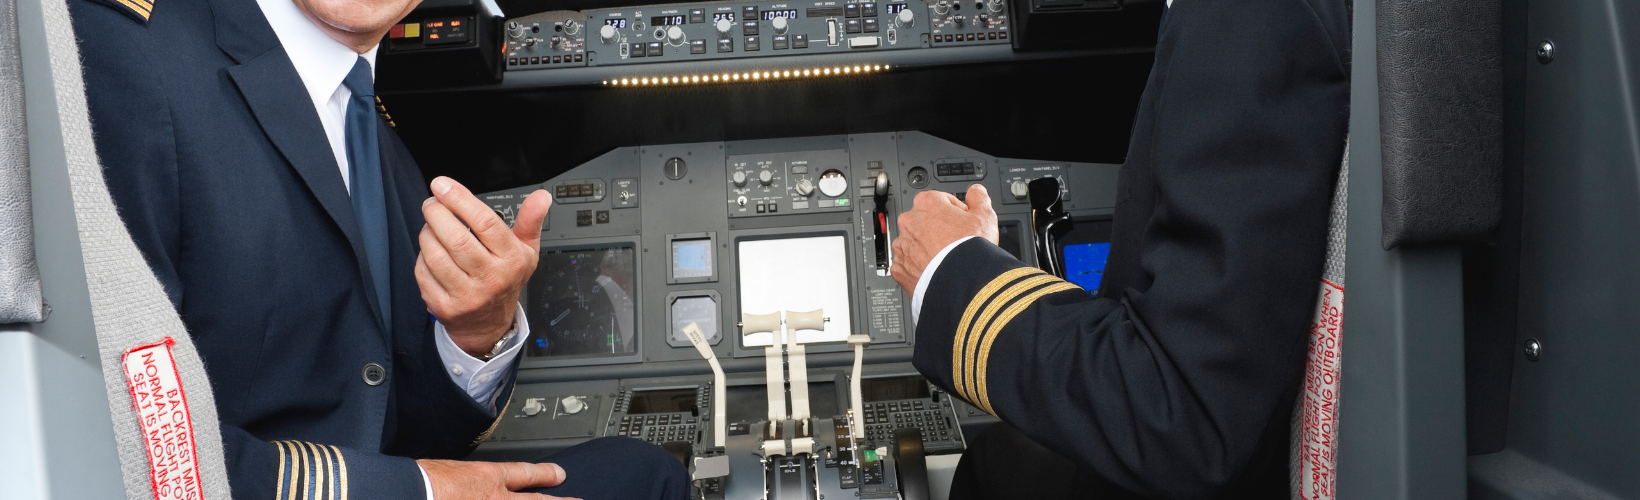 plaatje piloten in vliegtuig op de automatische piloot vliegen